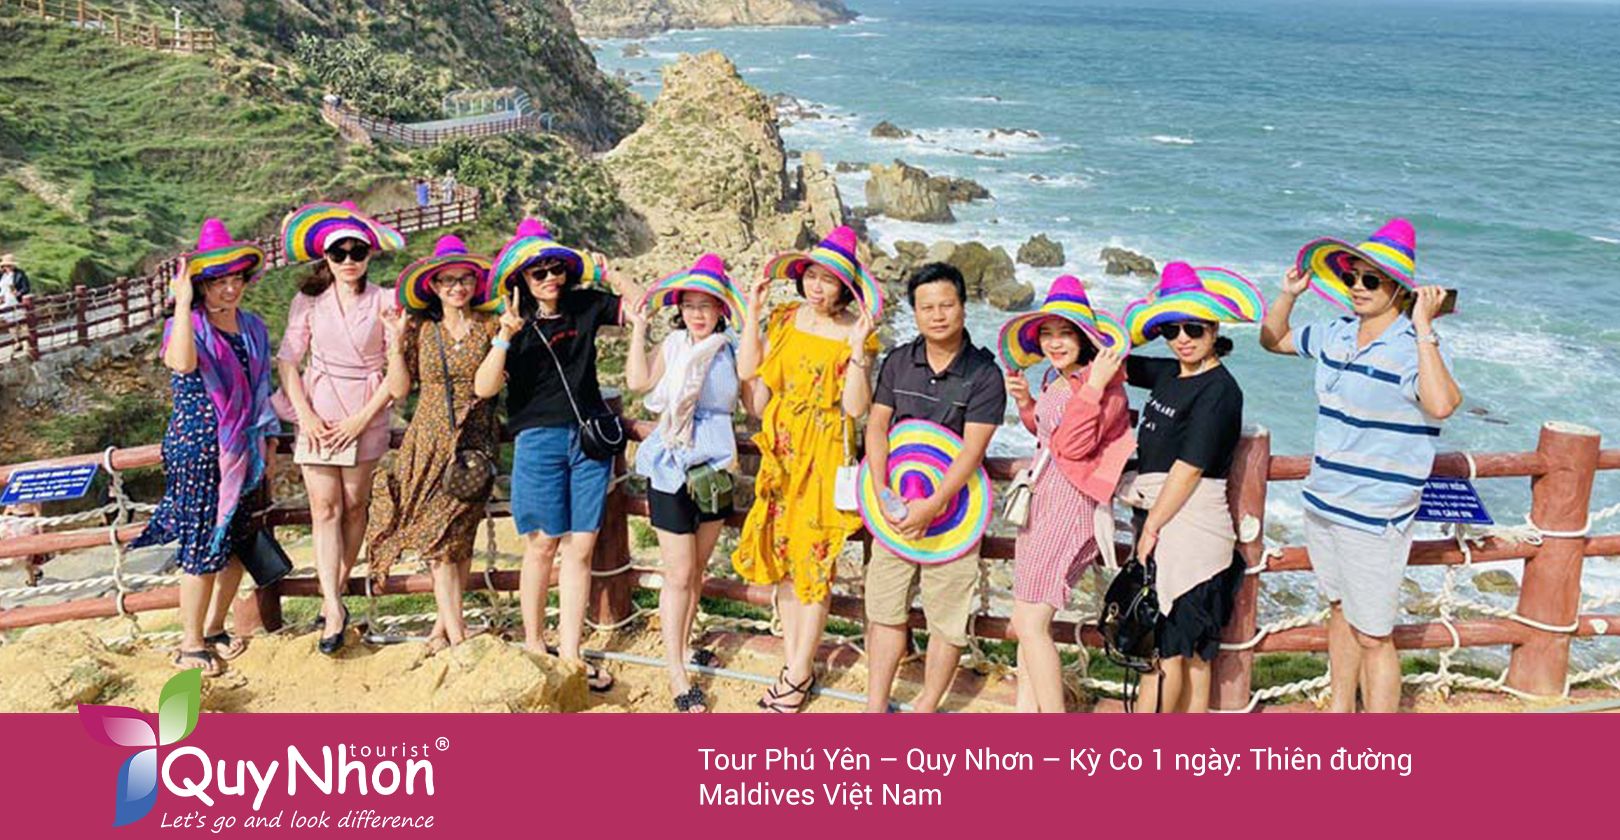 Tour Phú Yên – Quy Nhơn – Kỳ Co 1 ngày